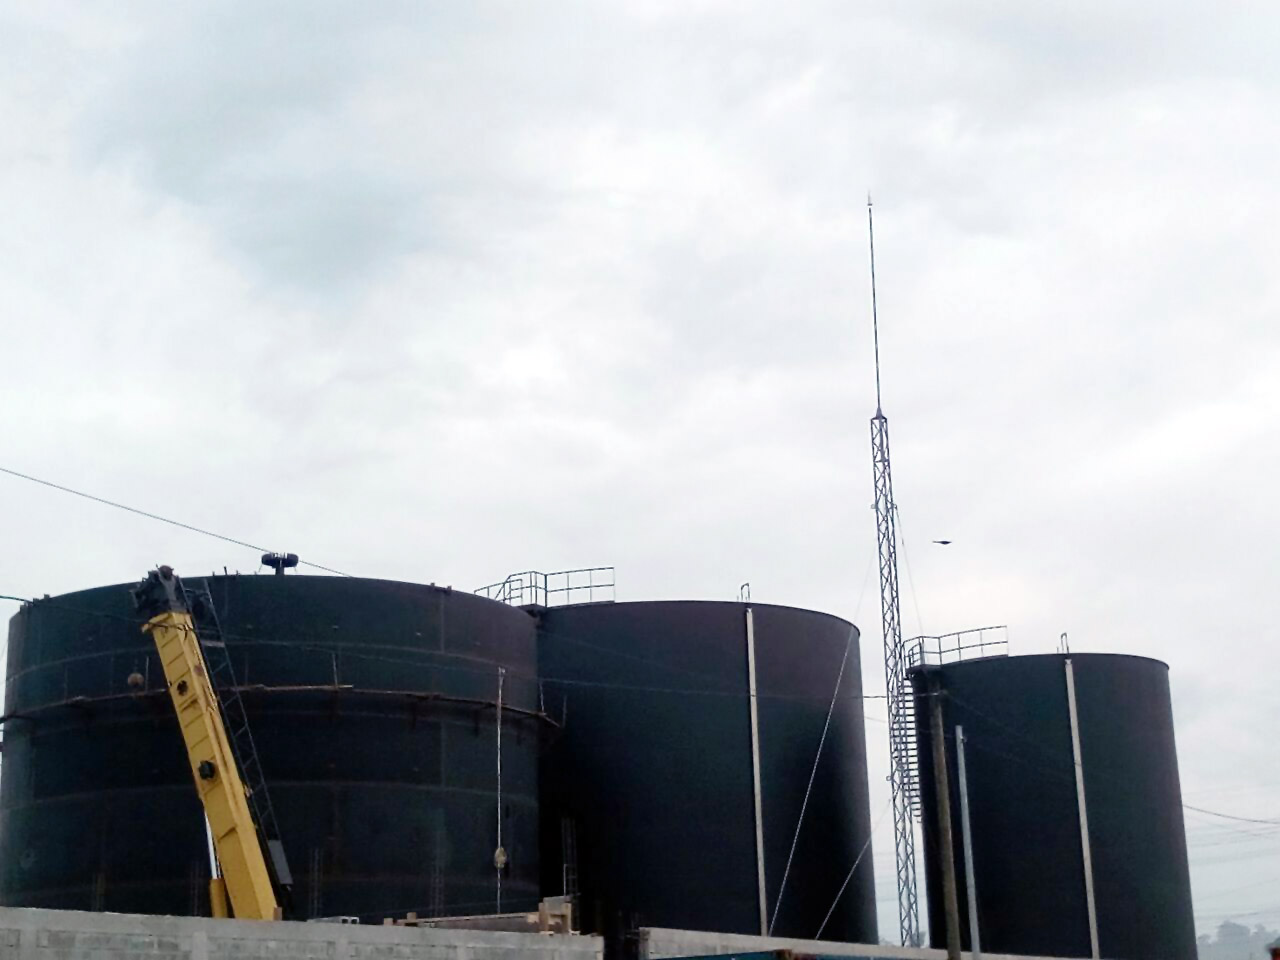 Aplicaciones Tecnológicas protege con sus pararrayos tanques de almacenamiento de aceite en Guatemala